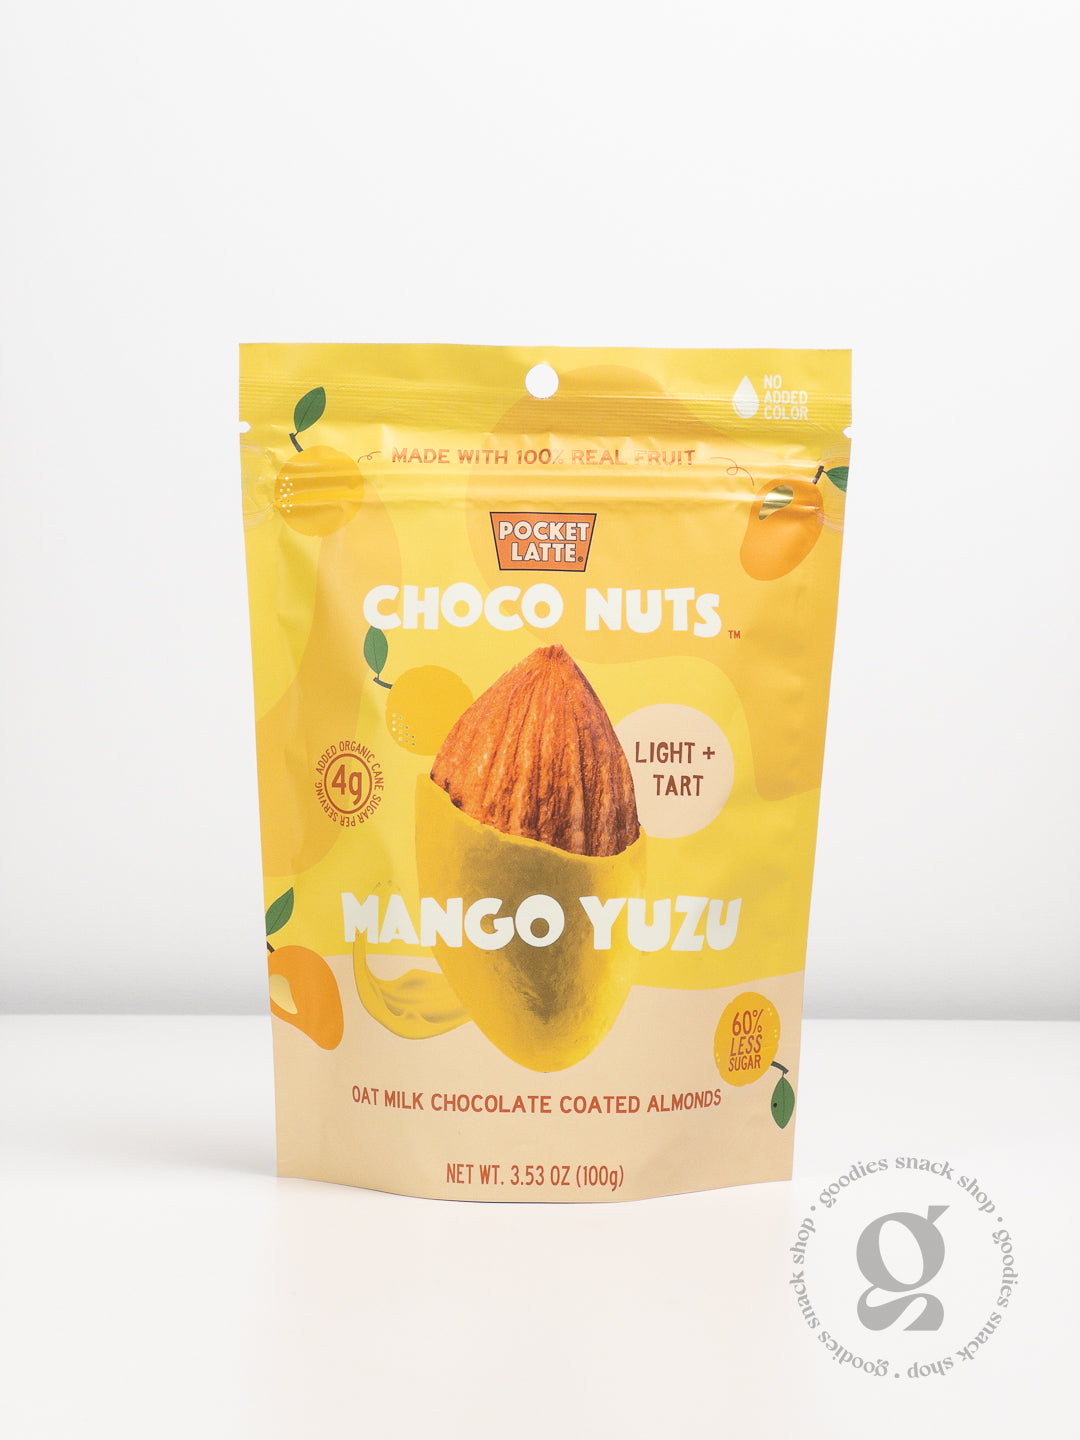 Pocket Latte - Mango Yuzu Choco Nuts